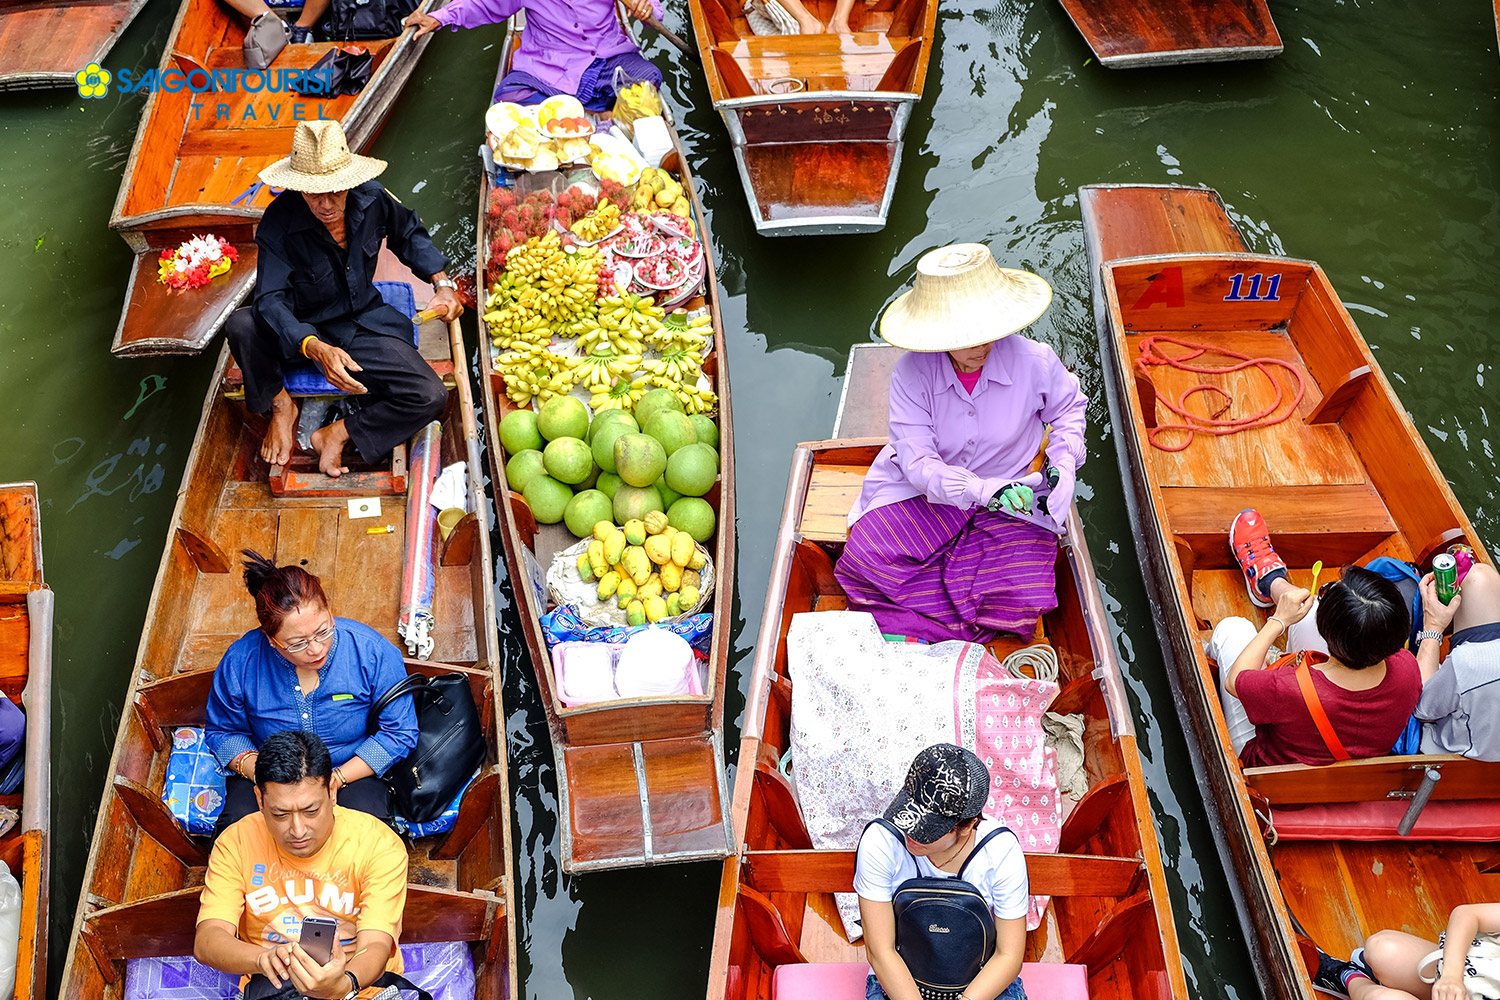 Du Lịch Thái Lan [Bangkok - Pattaya] (Vườn Nong Nooch - Chợ Nổi - Buffet Du Thuyền Trên Sông Chaopraya)